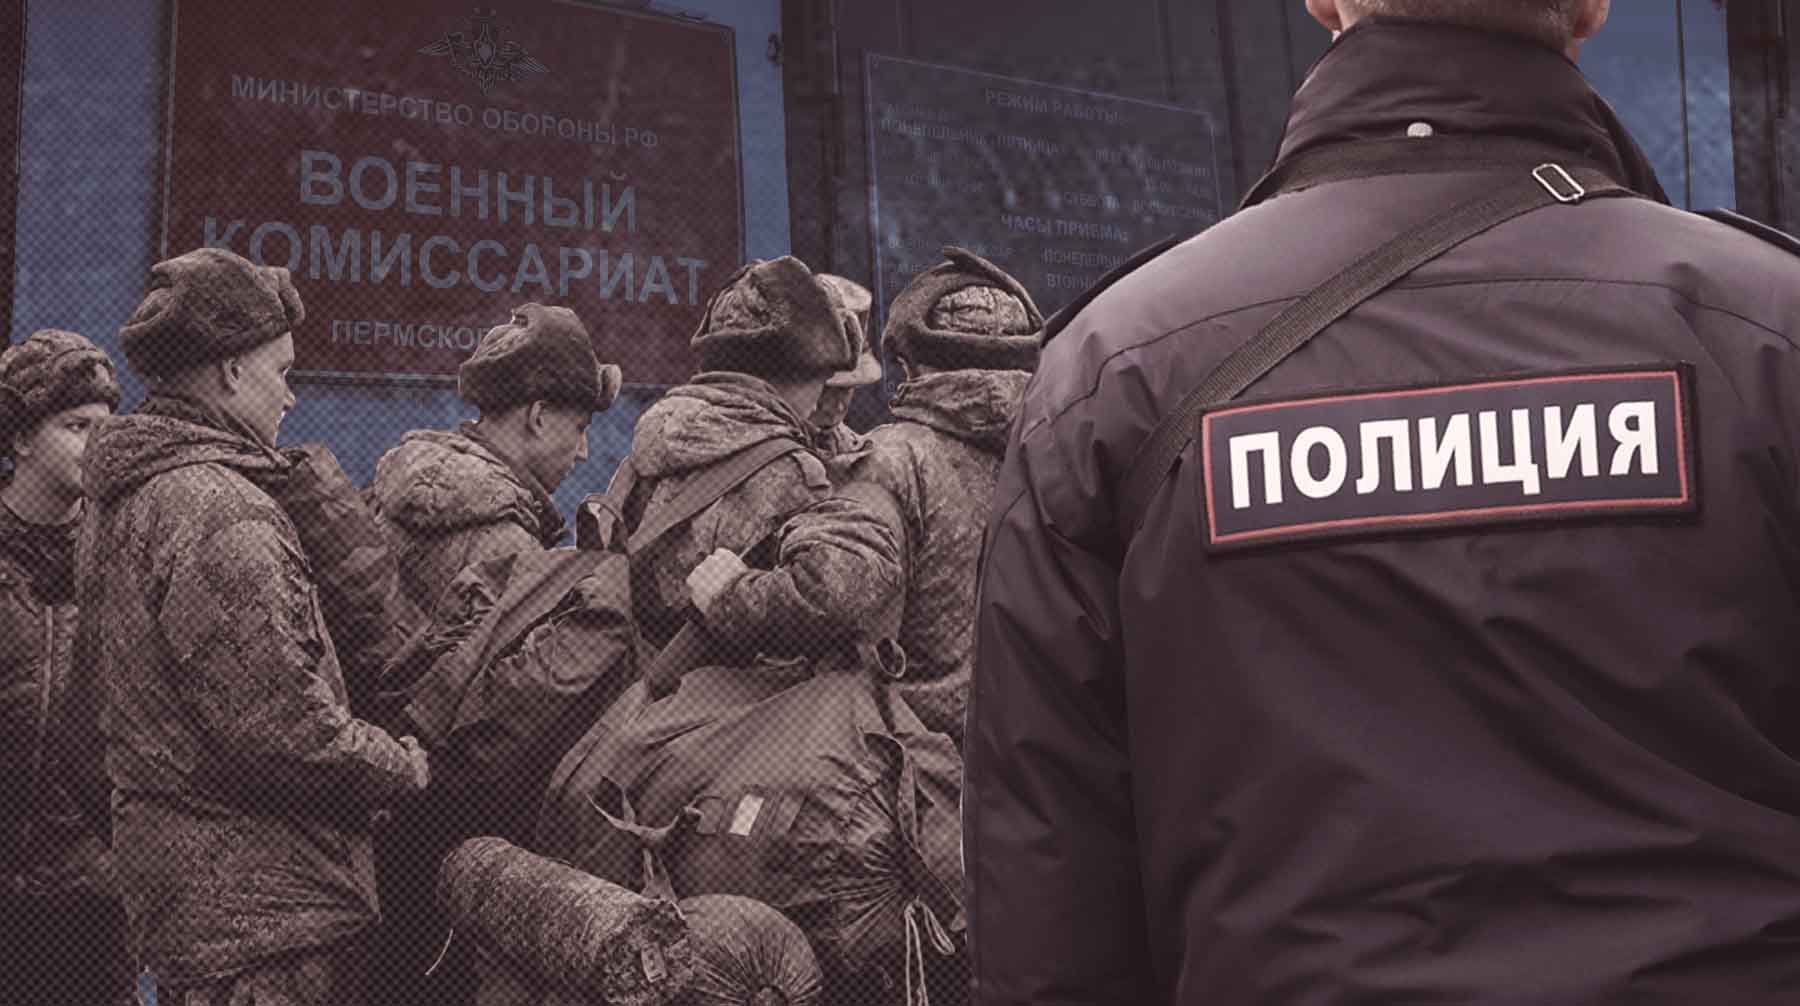 Военнослужащие из Калининградской области второй год требуют через суд признать нарушения при их мобилизации Коллаж: Daily Storm